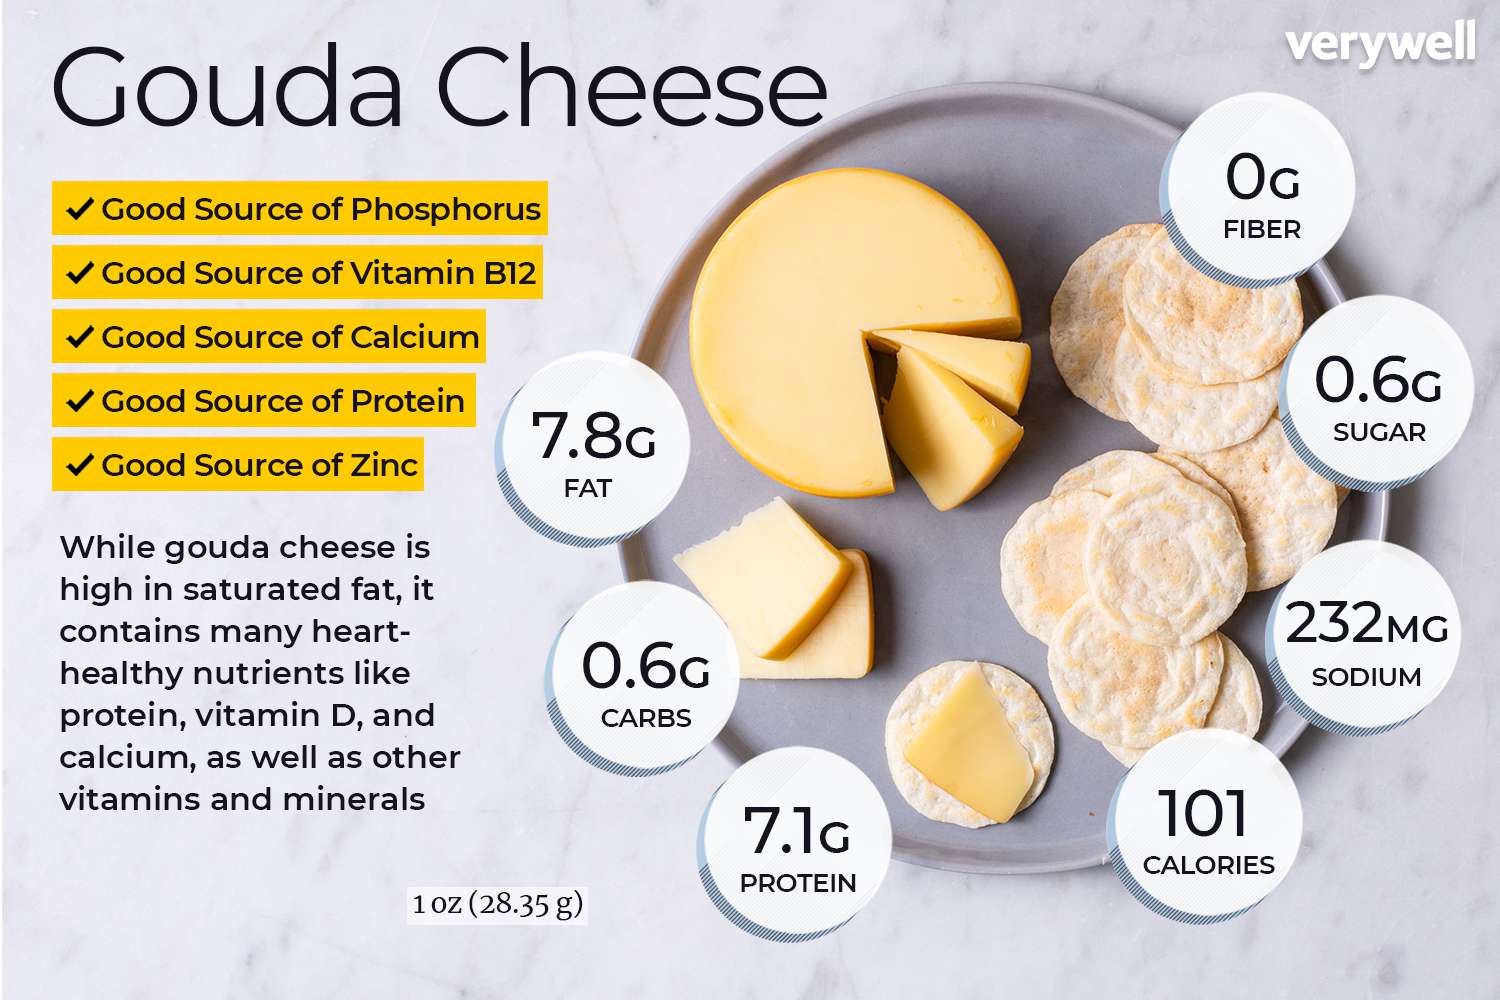 Goudse kaas op een bord met crackers